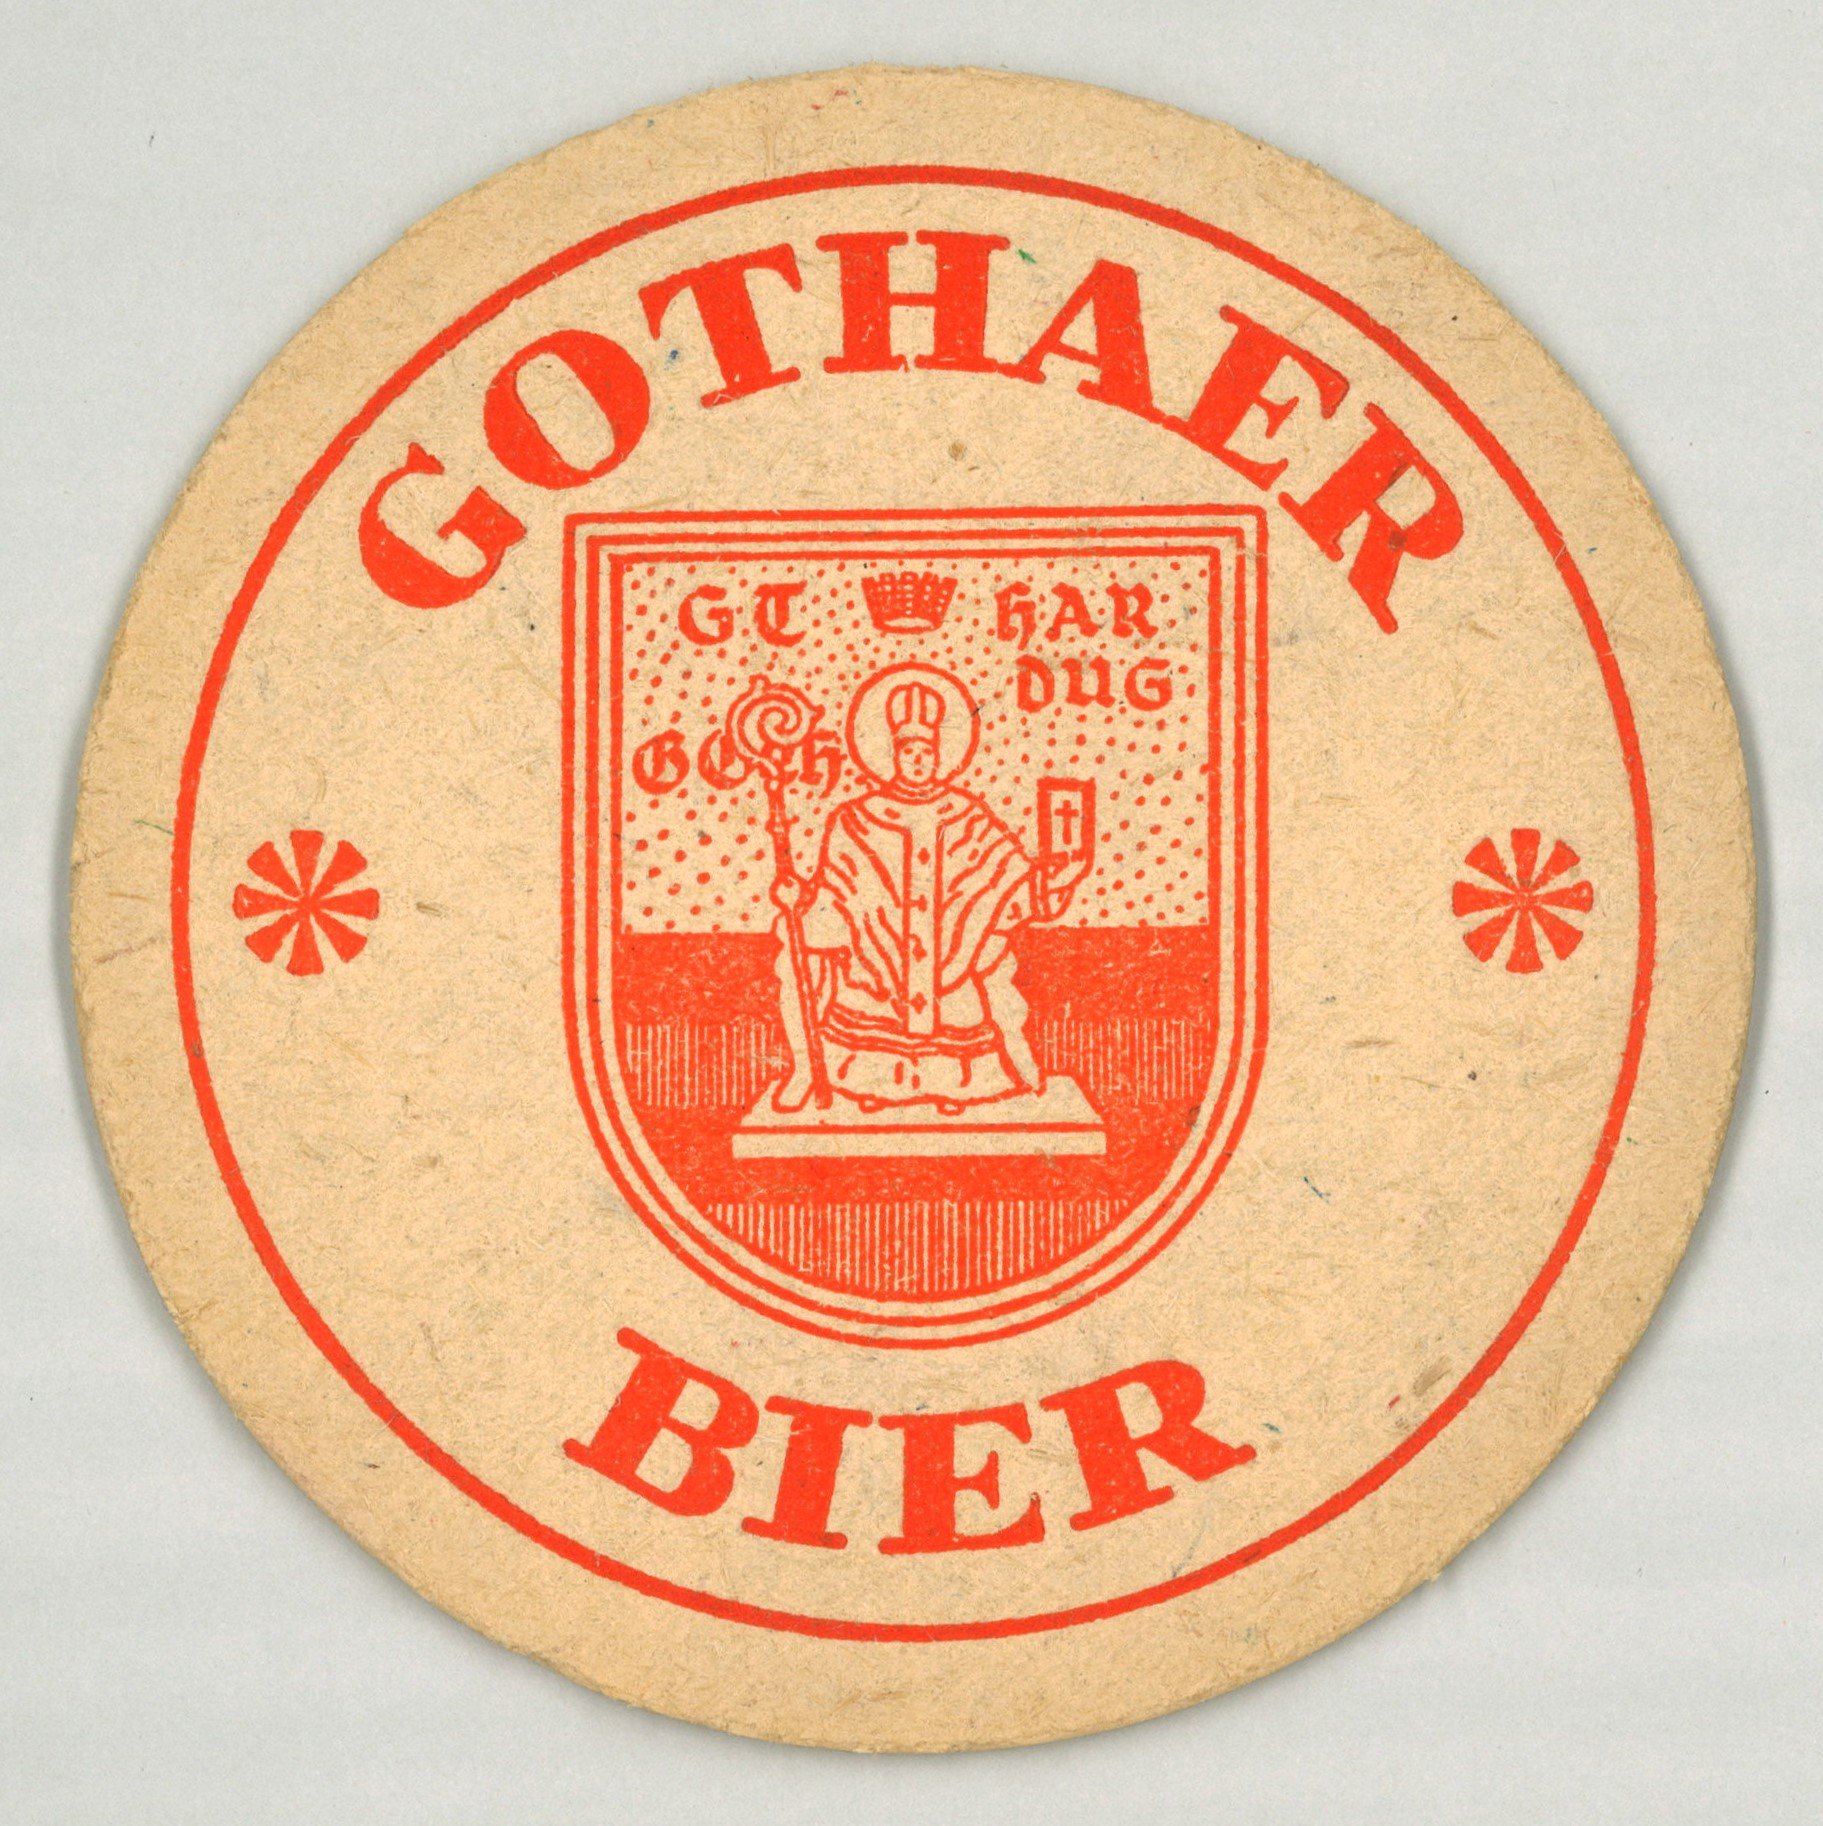 Gotha: Gothaer Bier (Landesgeschichtliche Vereinigung für die Mark Brandenburg e.V., Archiv CC BY)